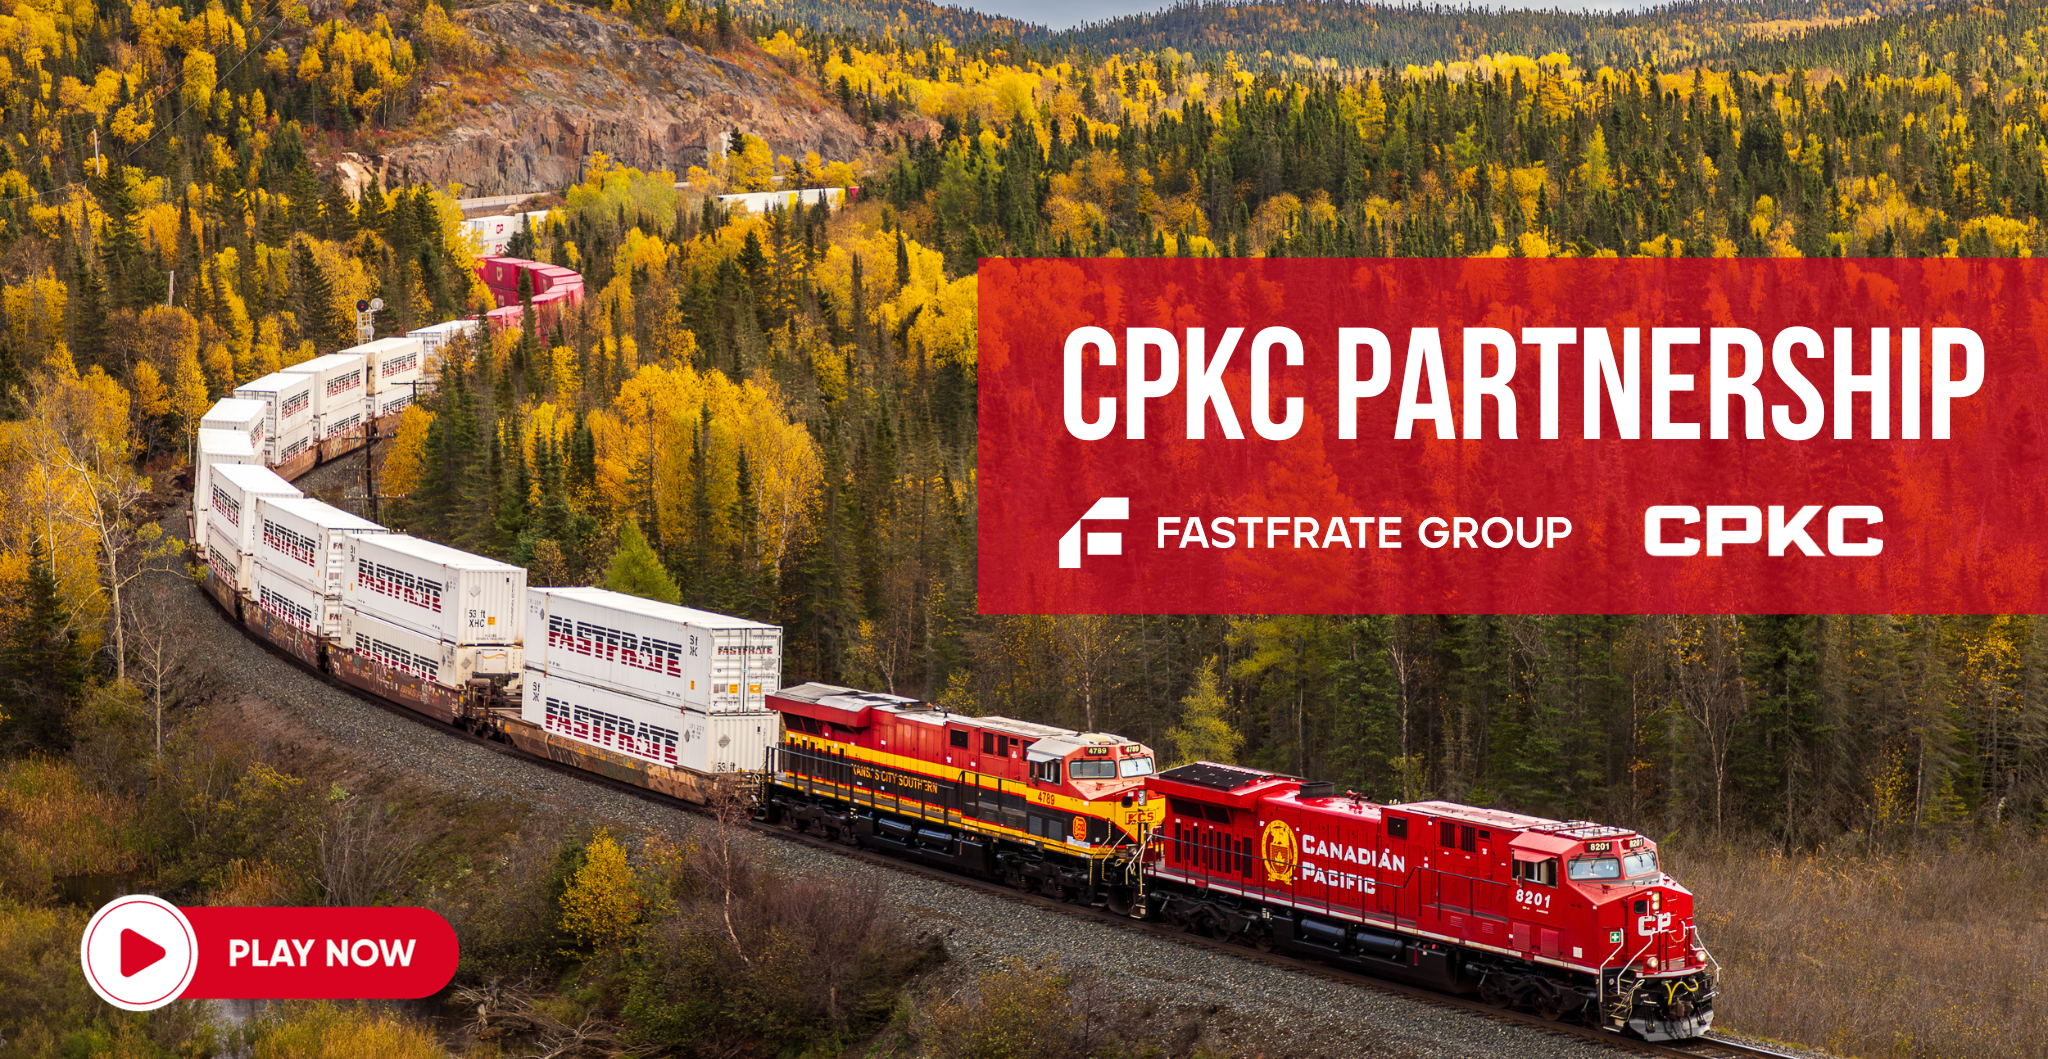 CPKC Partnership